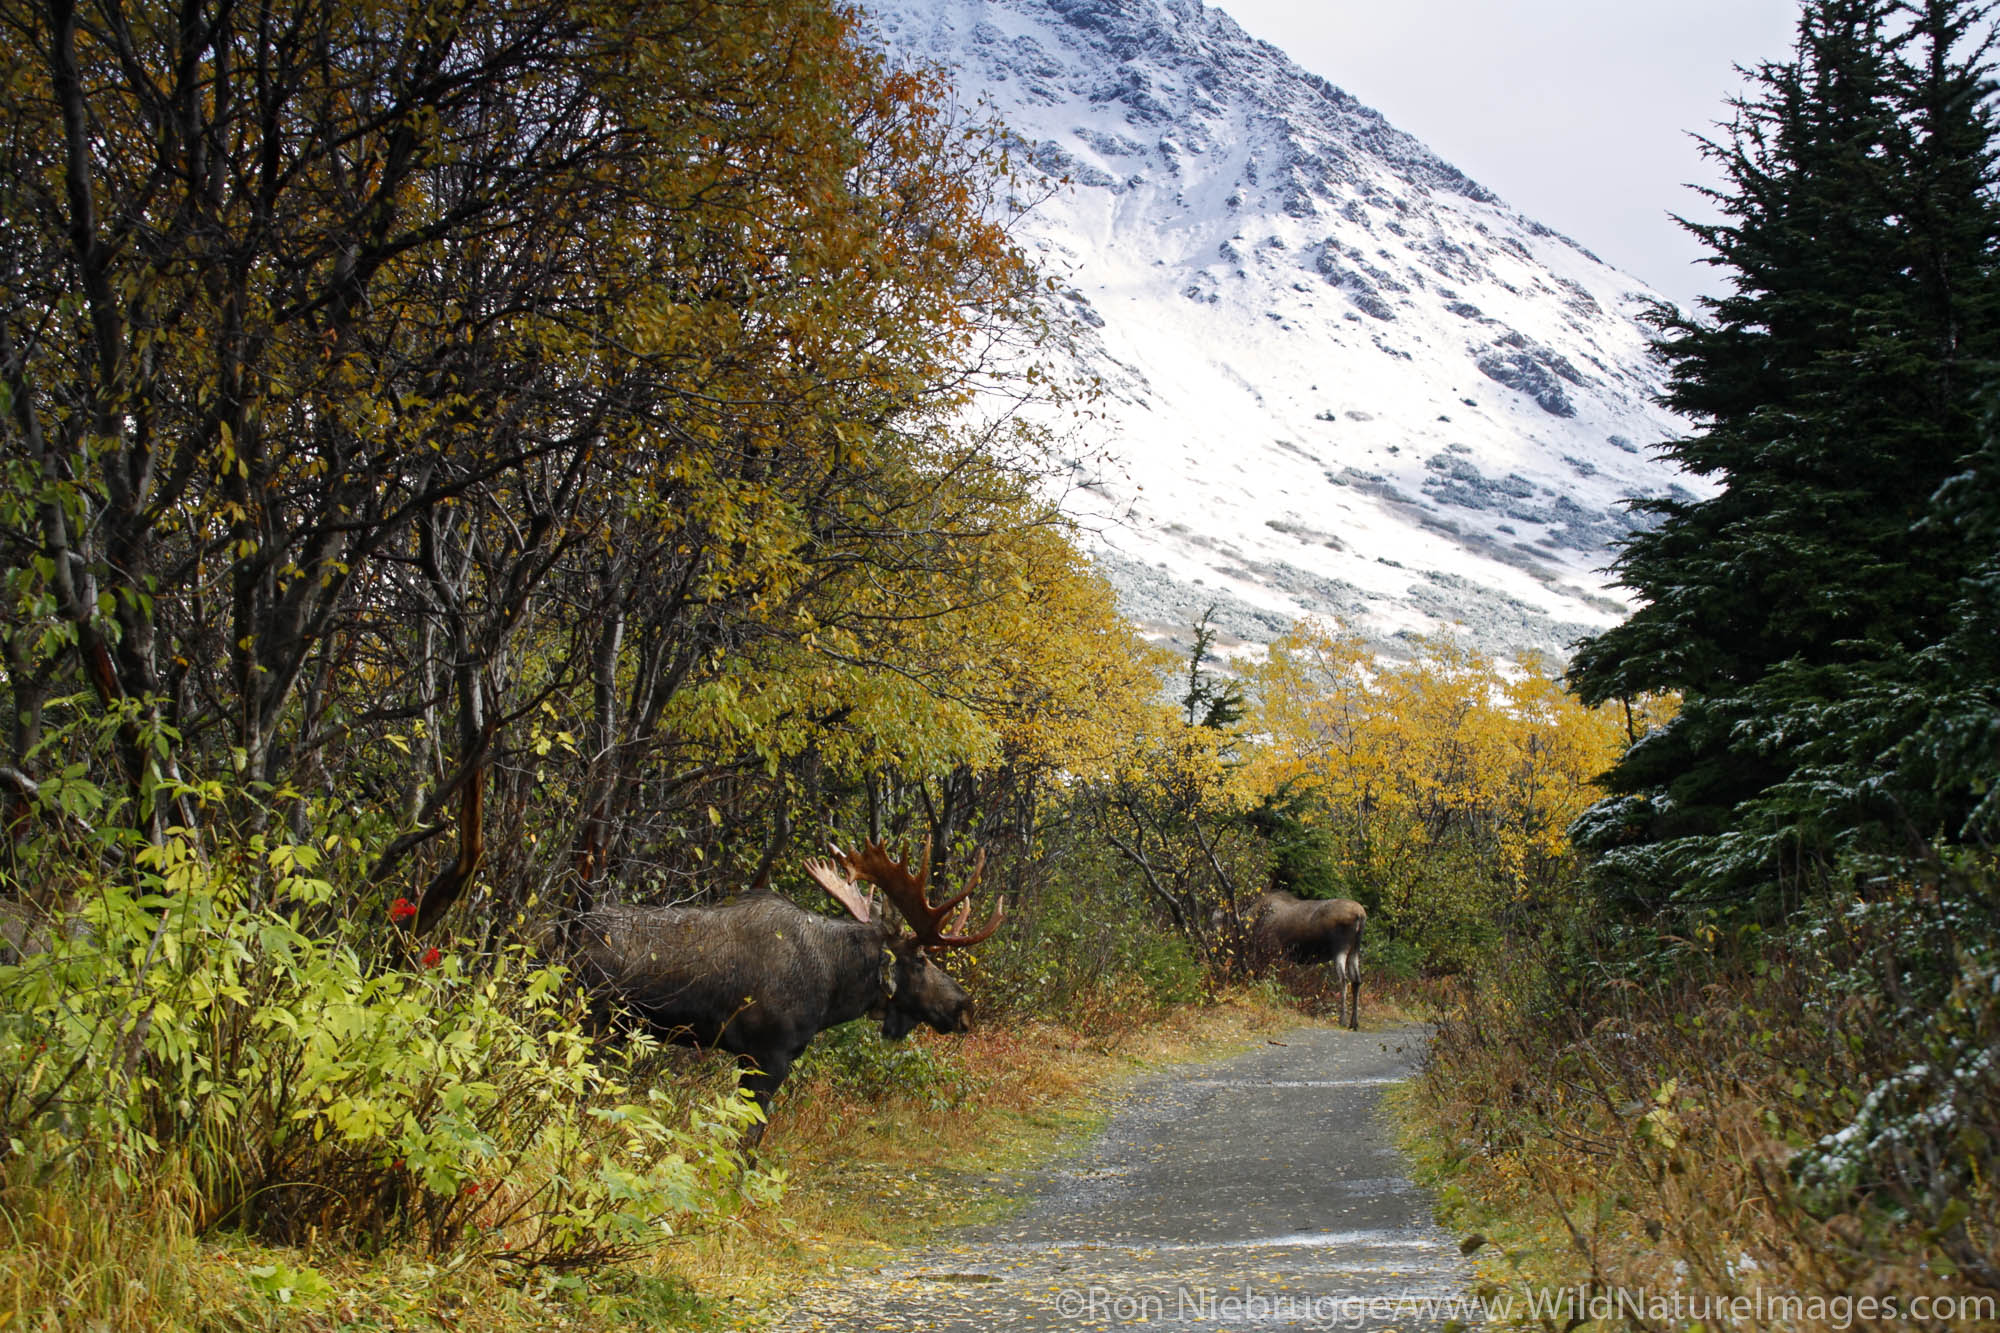 A Bull Moose pursues a cow during the fall rut in the Chugach Mountains, Chugach State Park, Anchorage, Alaska.